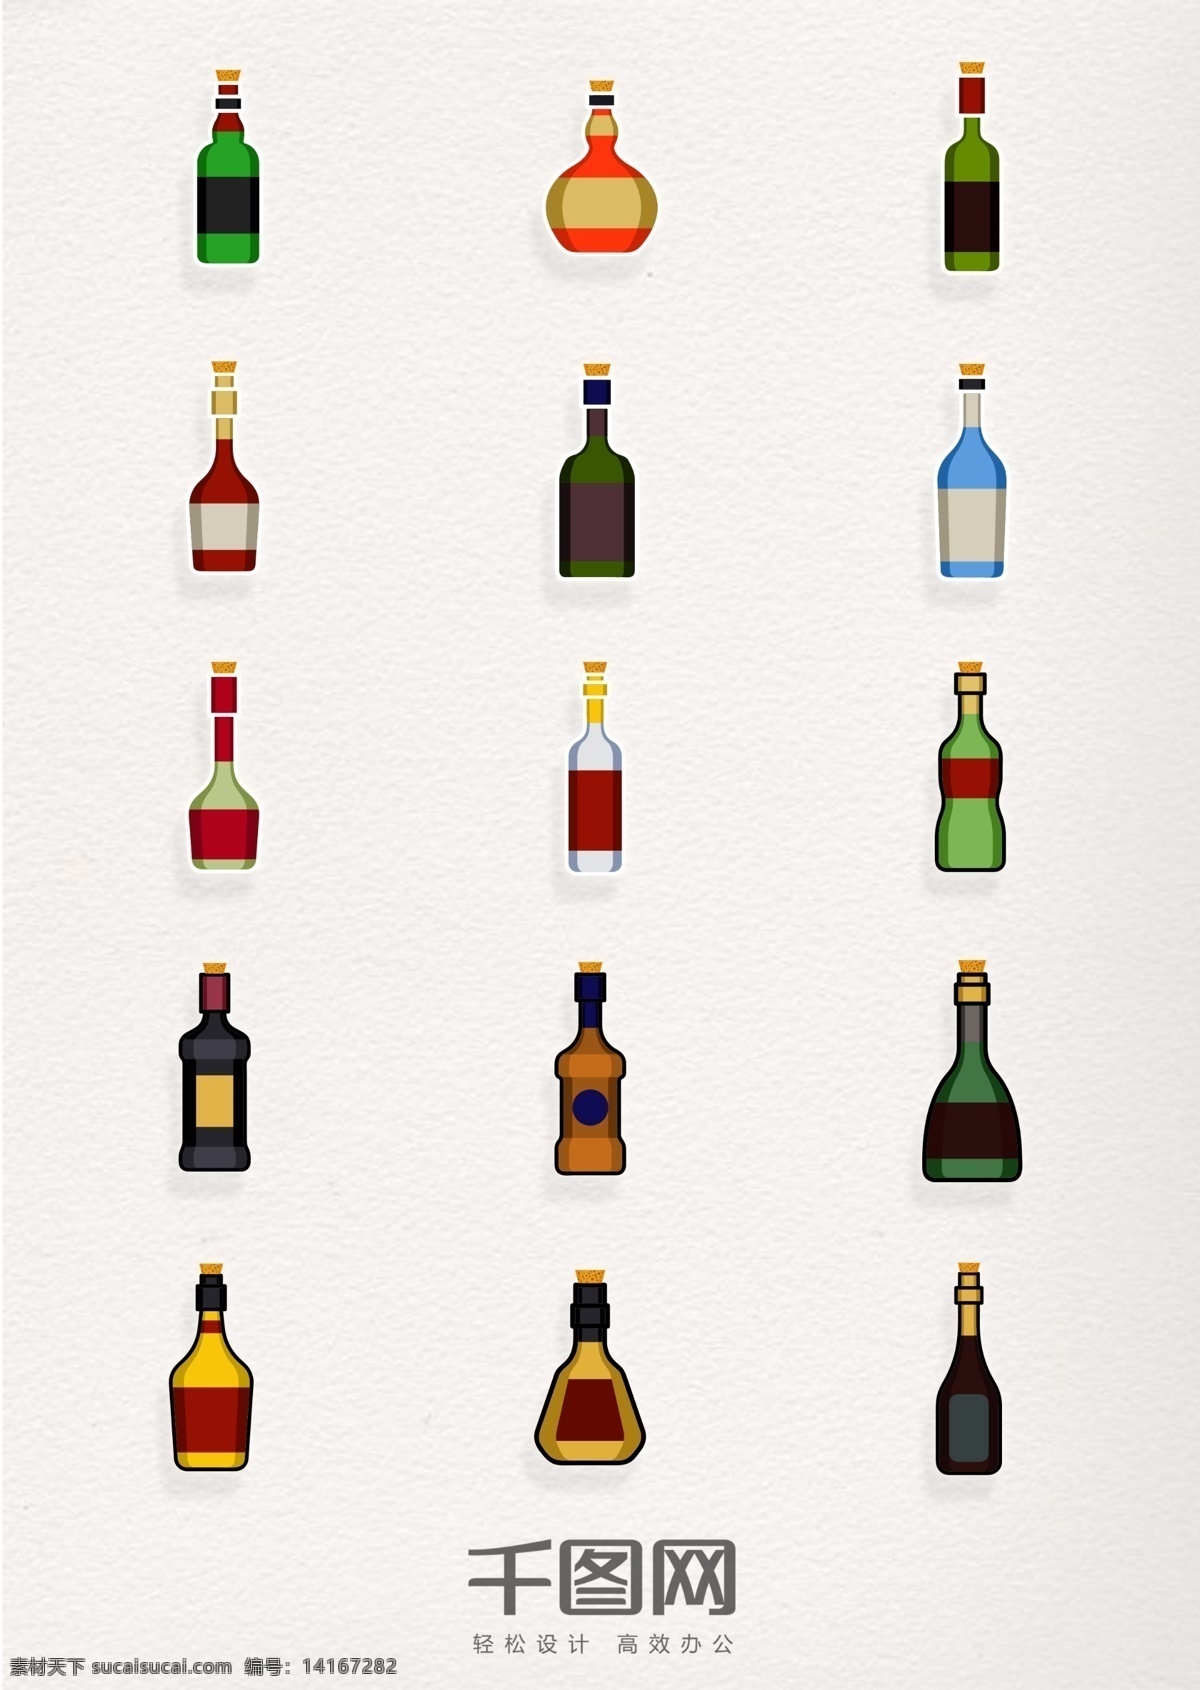 各种 白酒 红酒 酒瓶 图标 简约 香槟 洋酒 酒类 酒 酒瓶图标 酒元素 酒瓶元素